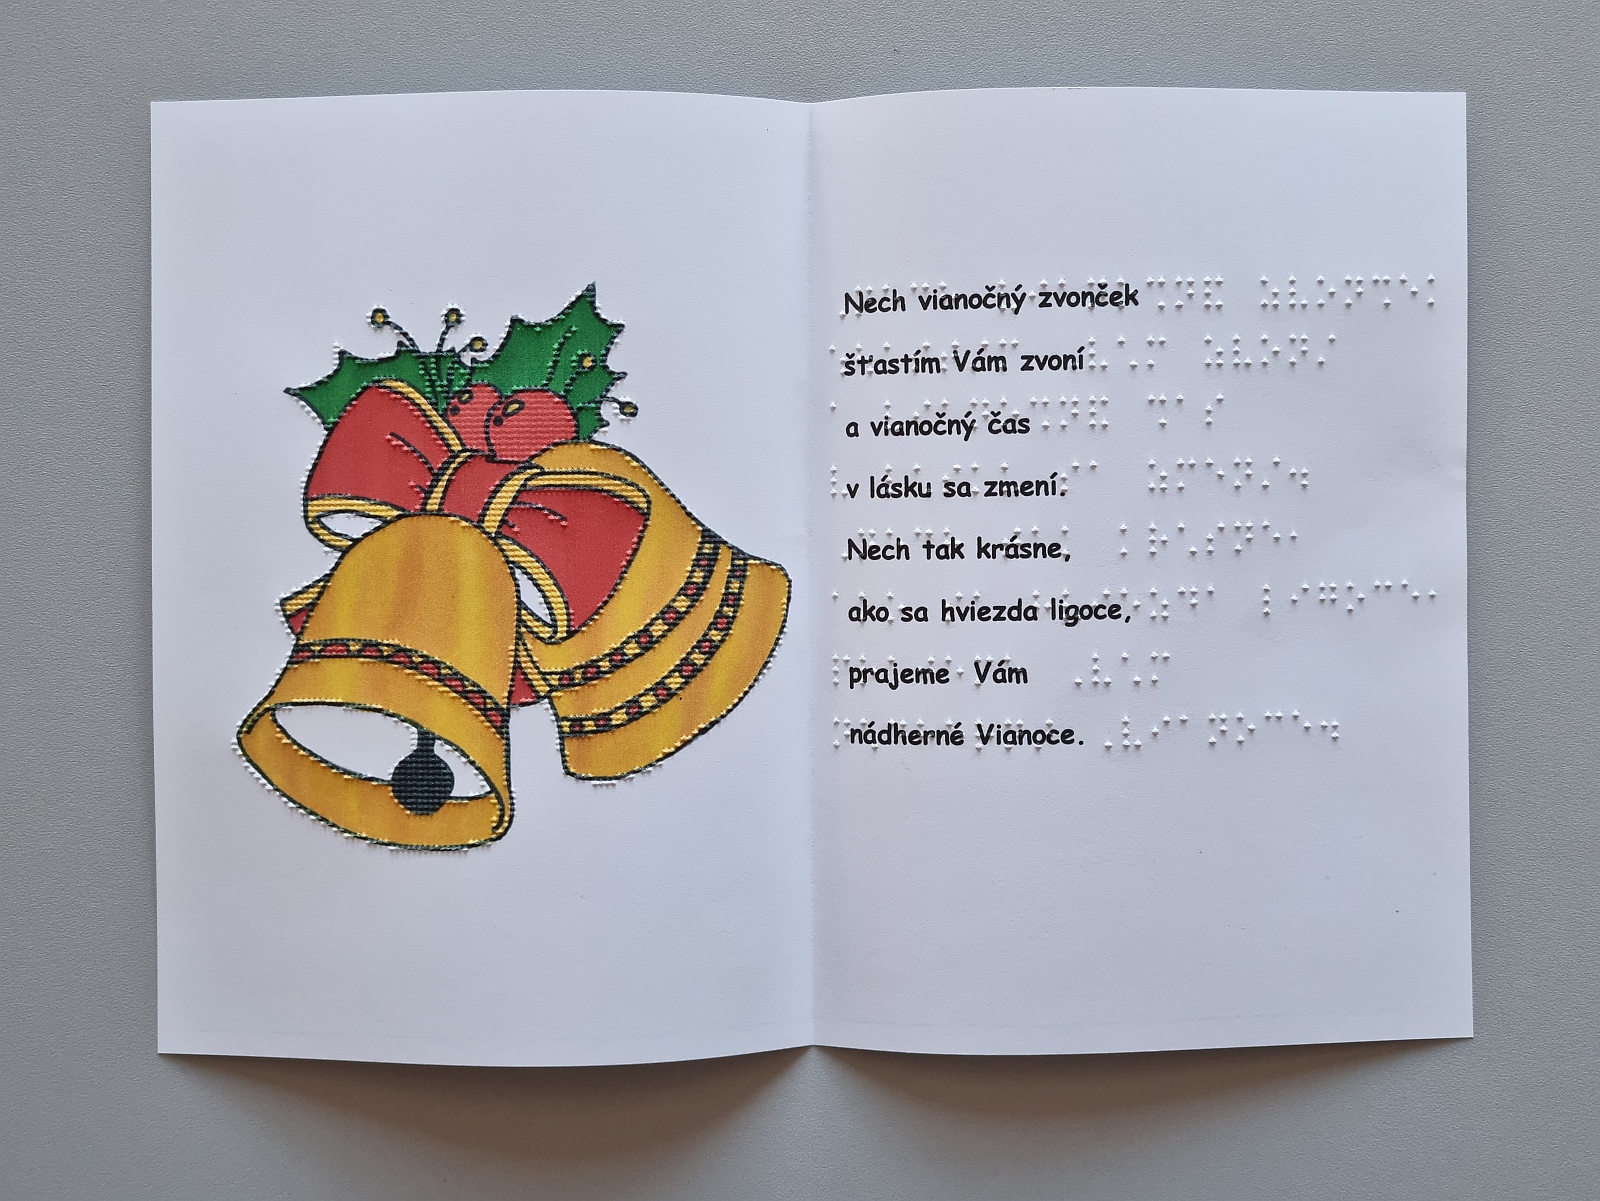 Vianočná pohľadnica, na farebnom obrázku sú vyobrazené dva zvončeky so stuhou. Text v braili aj čiernotlači.